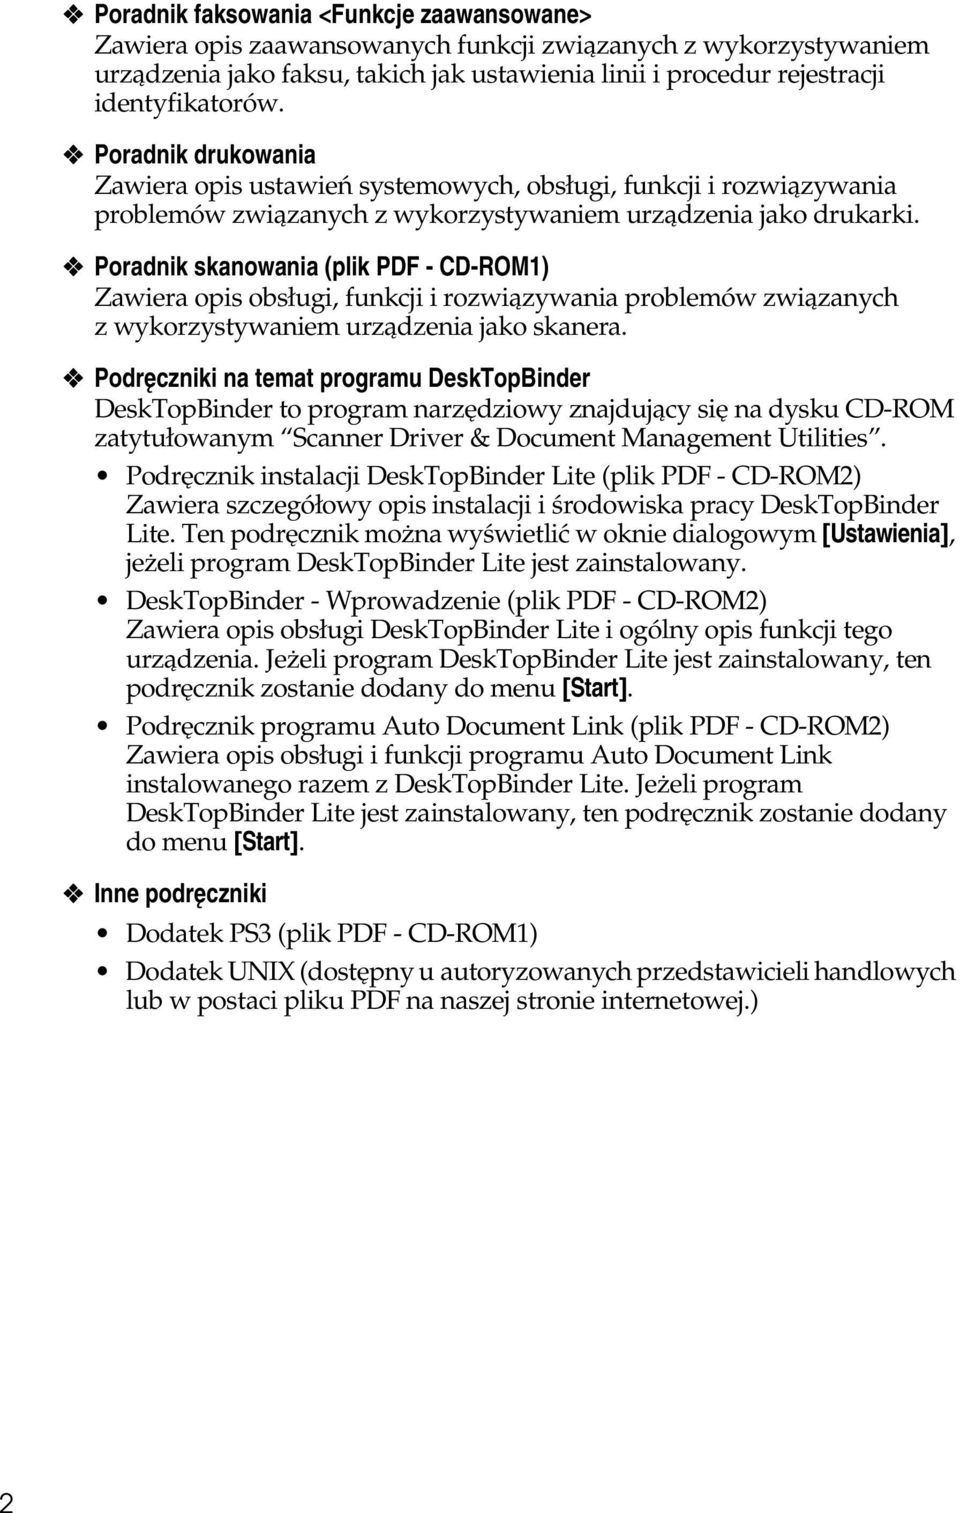 Poradnik skanowania (plik PDF - CD-ROM1) Zawiera opis obsâugi, funkcji i rozwiàzywania problemów zwiàzanych z wykorzystywaniem urzàdzenia jako skanera.